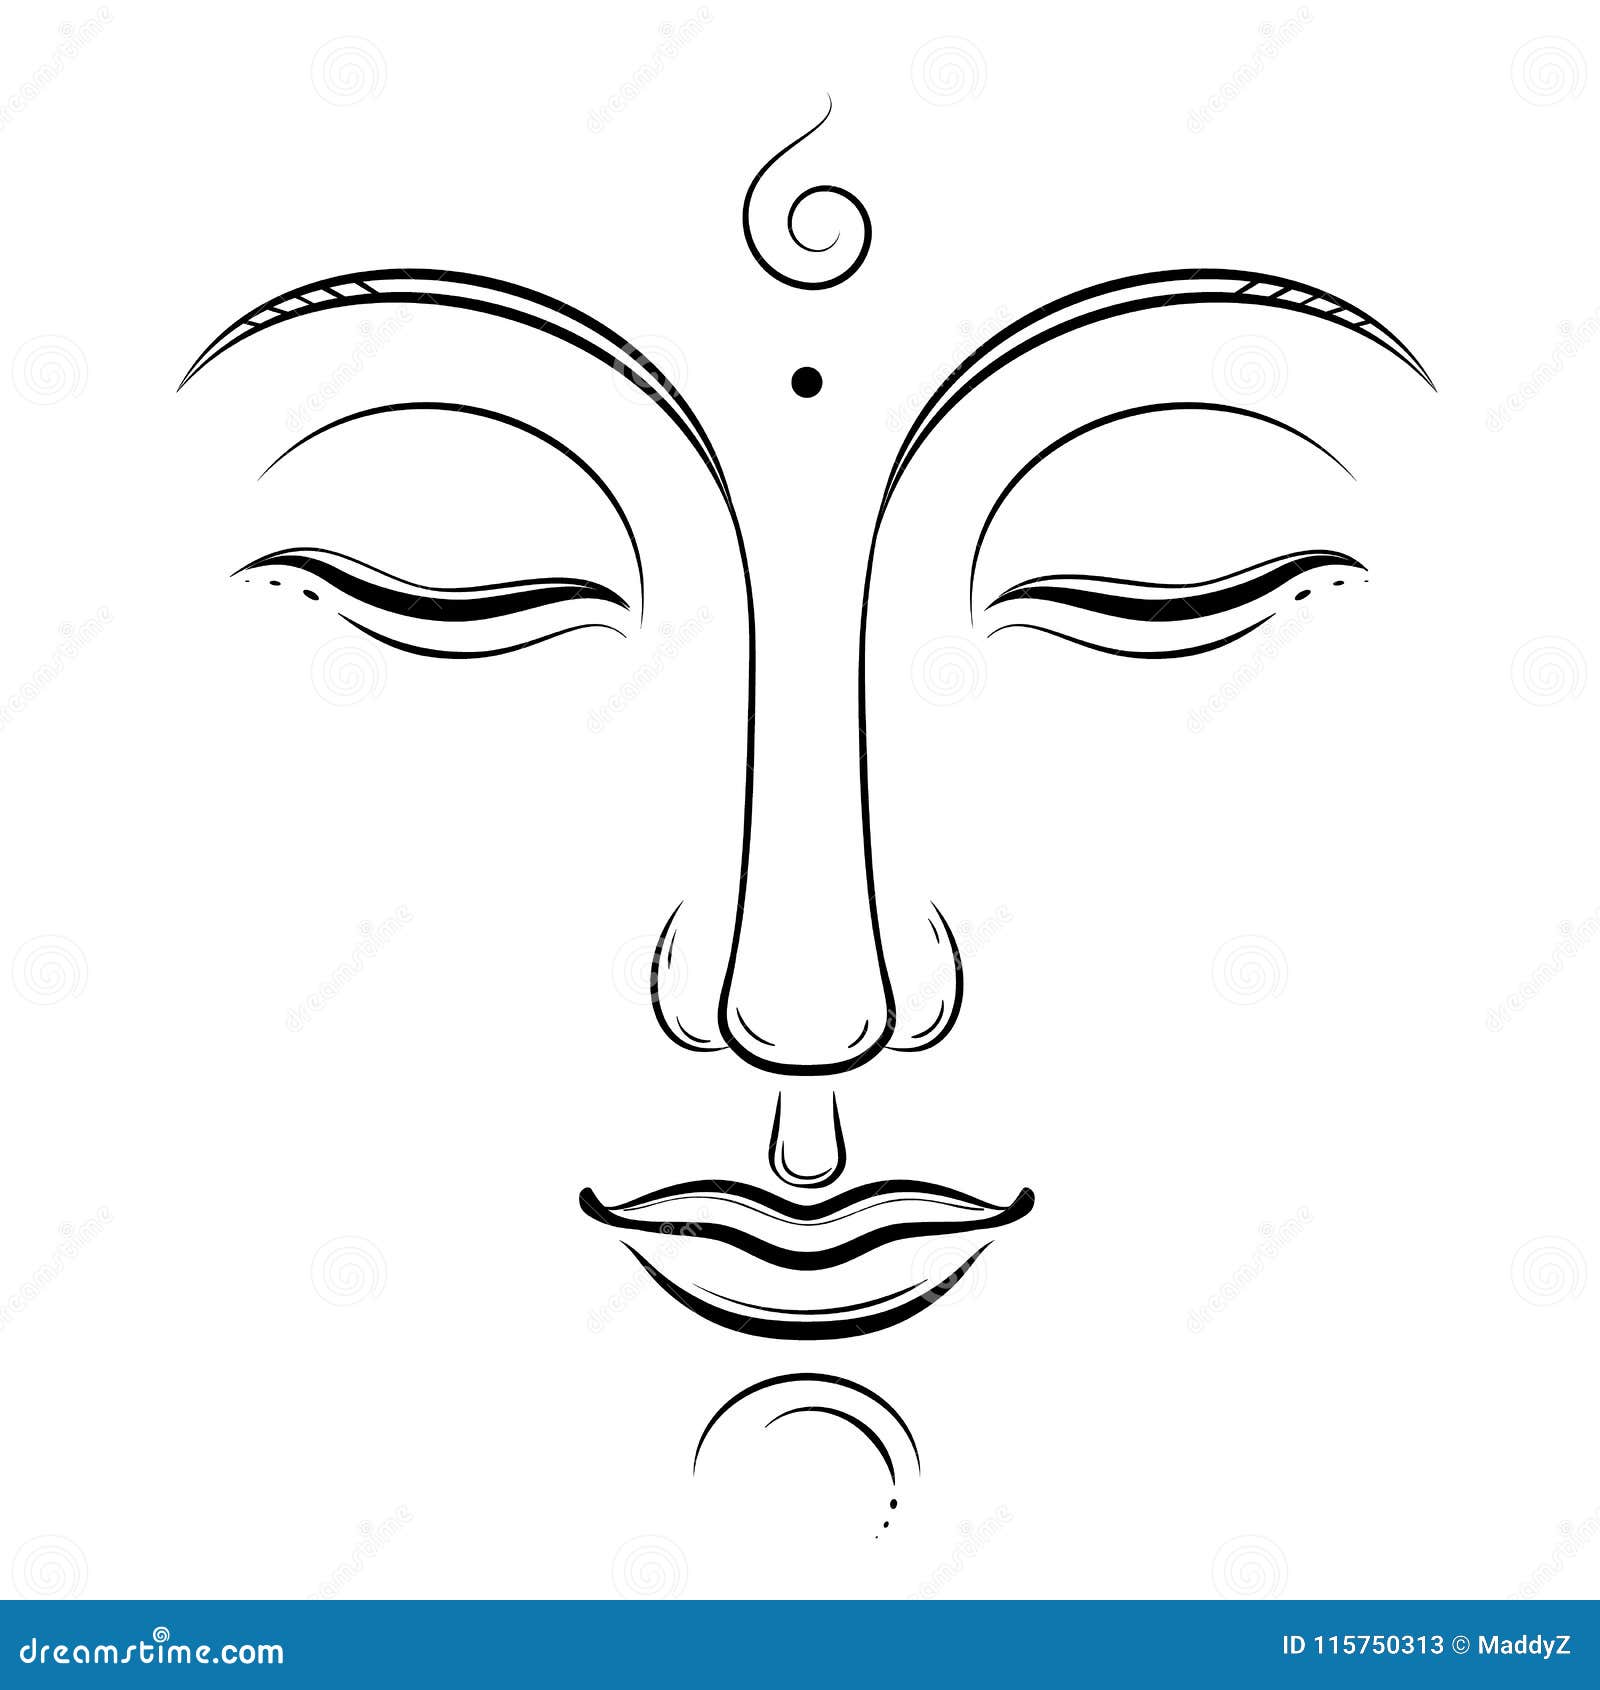 Mandala art | Lord Buddha Drawing | Lord Buddha Mandala Art - YouTube-sonthuy.vn